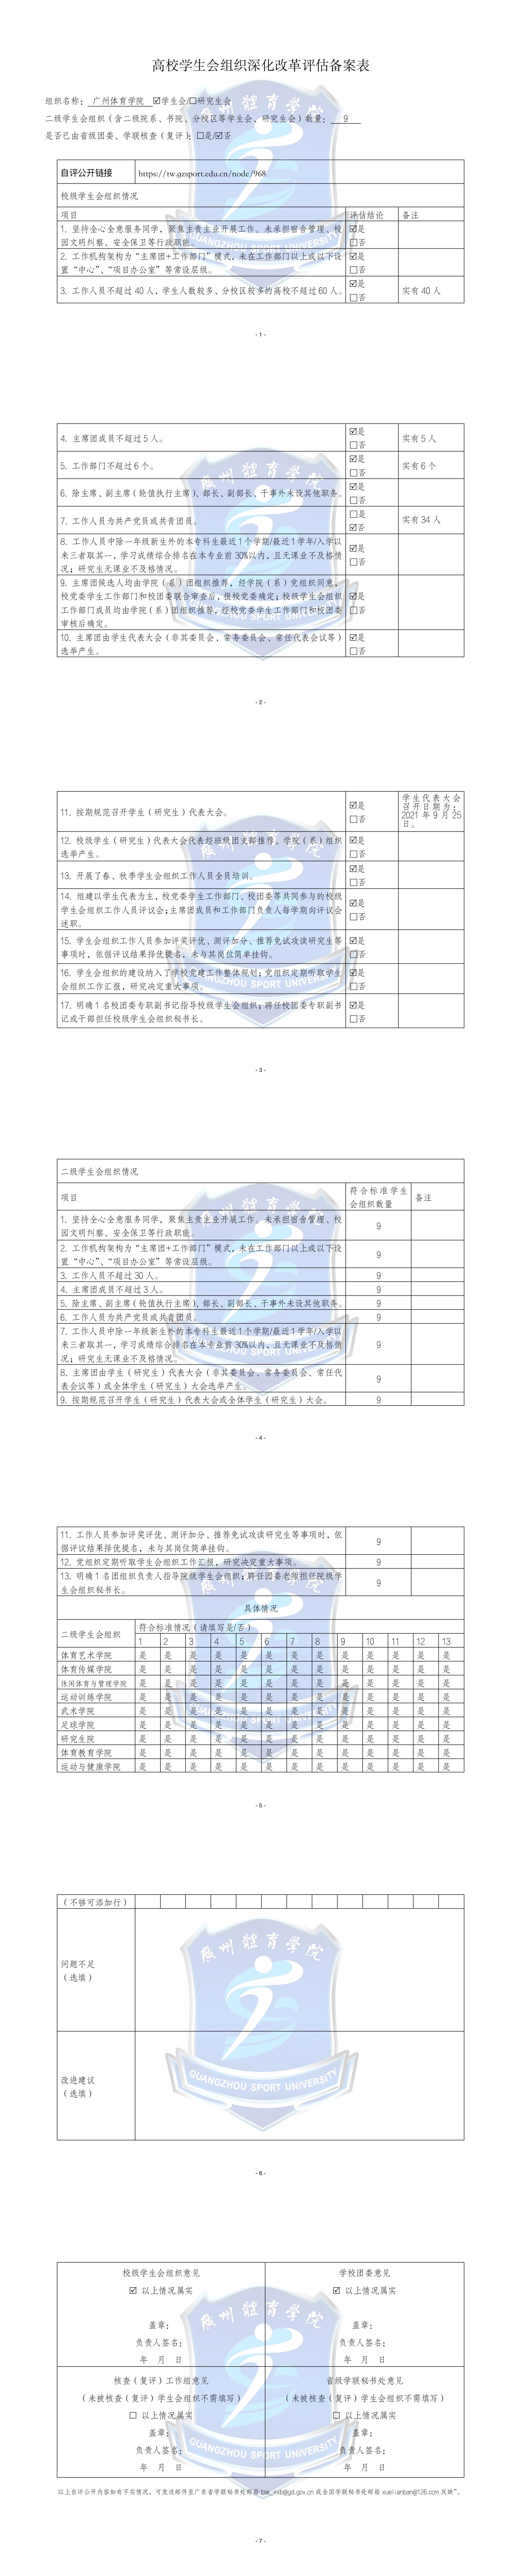 2021广州体育学院学生会组织深化改革评估备案表.jpg